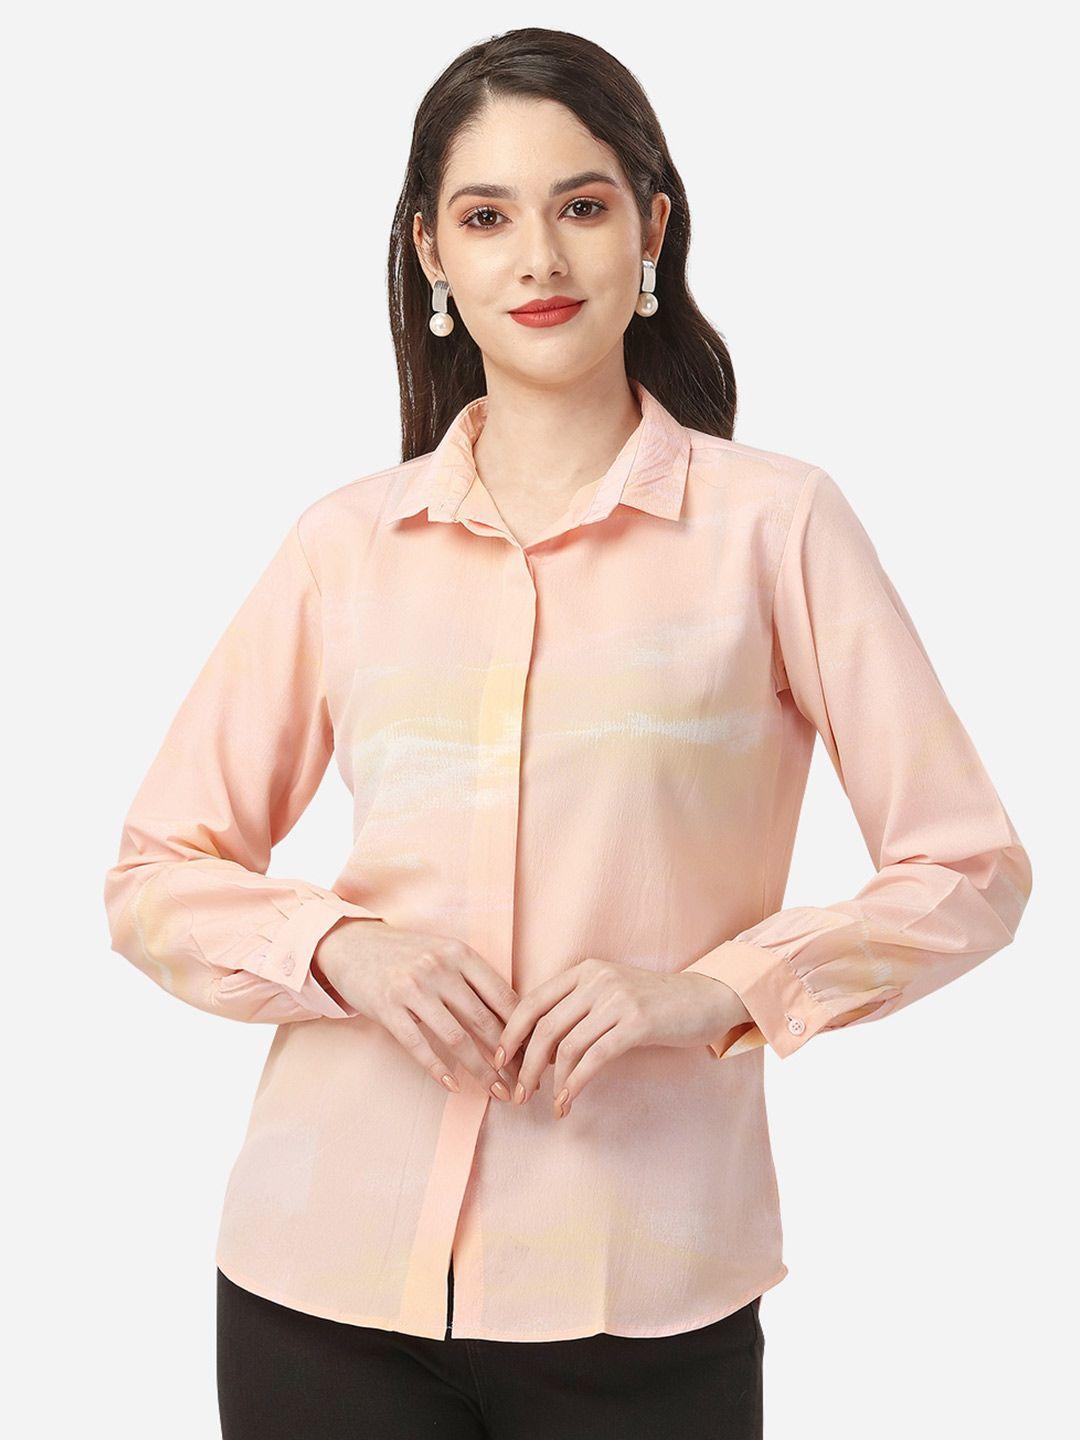 fbella women abstract printed casual shirt